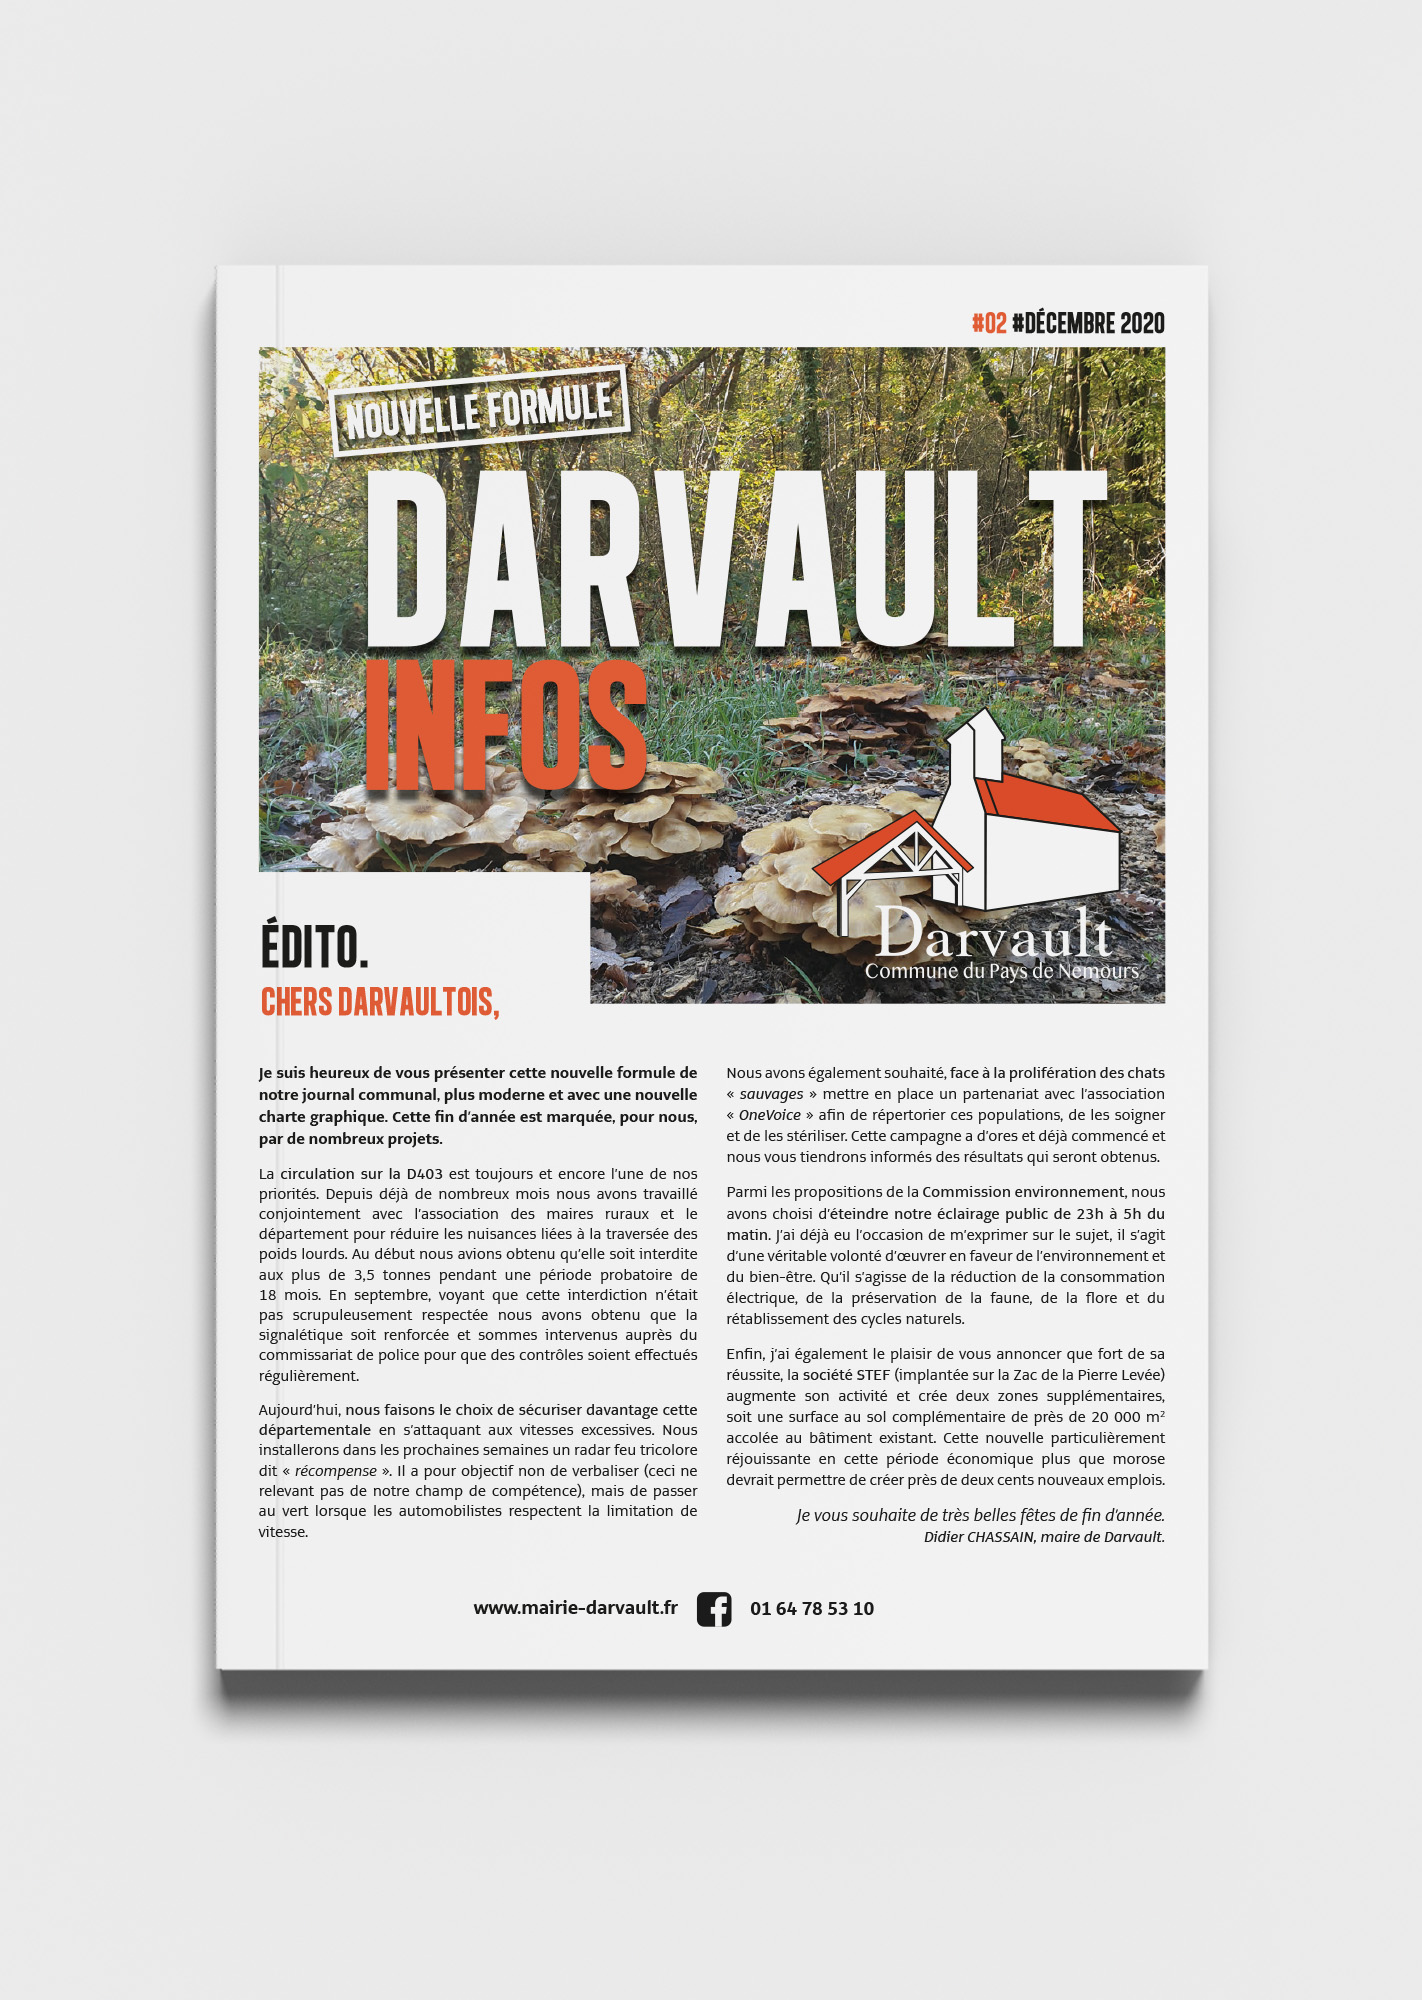 Mairie de Darvault, Couverture du journal communal de décembre 2020